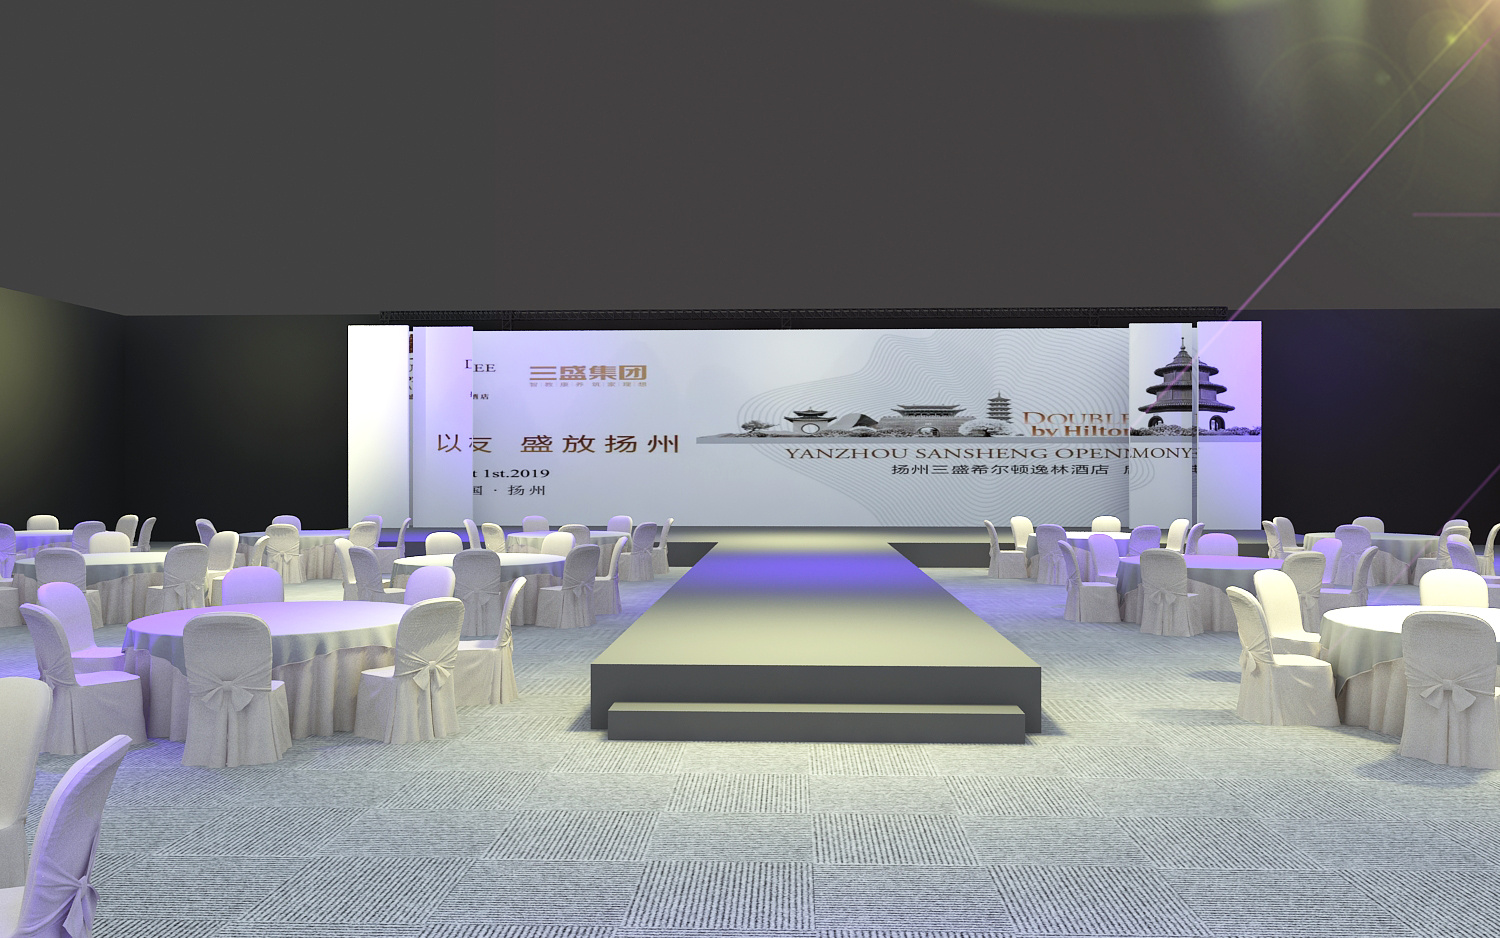 融创文旅发布会展示展览会场布置设计3d效果图